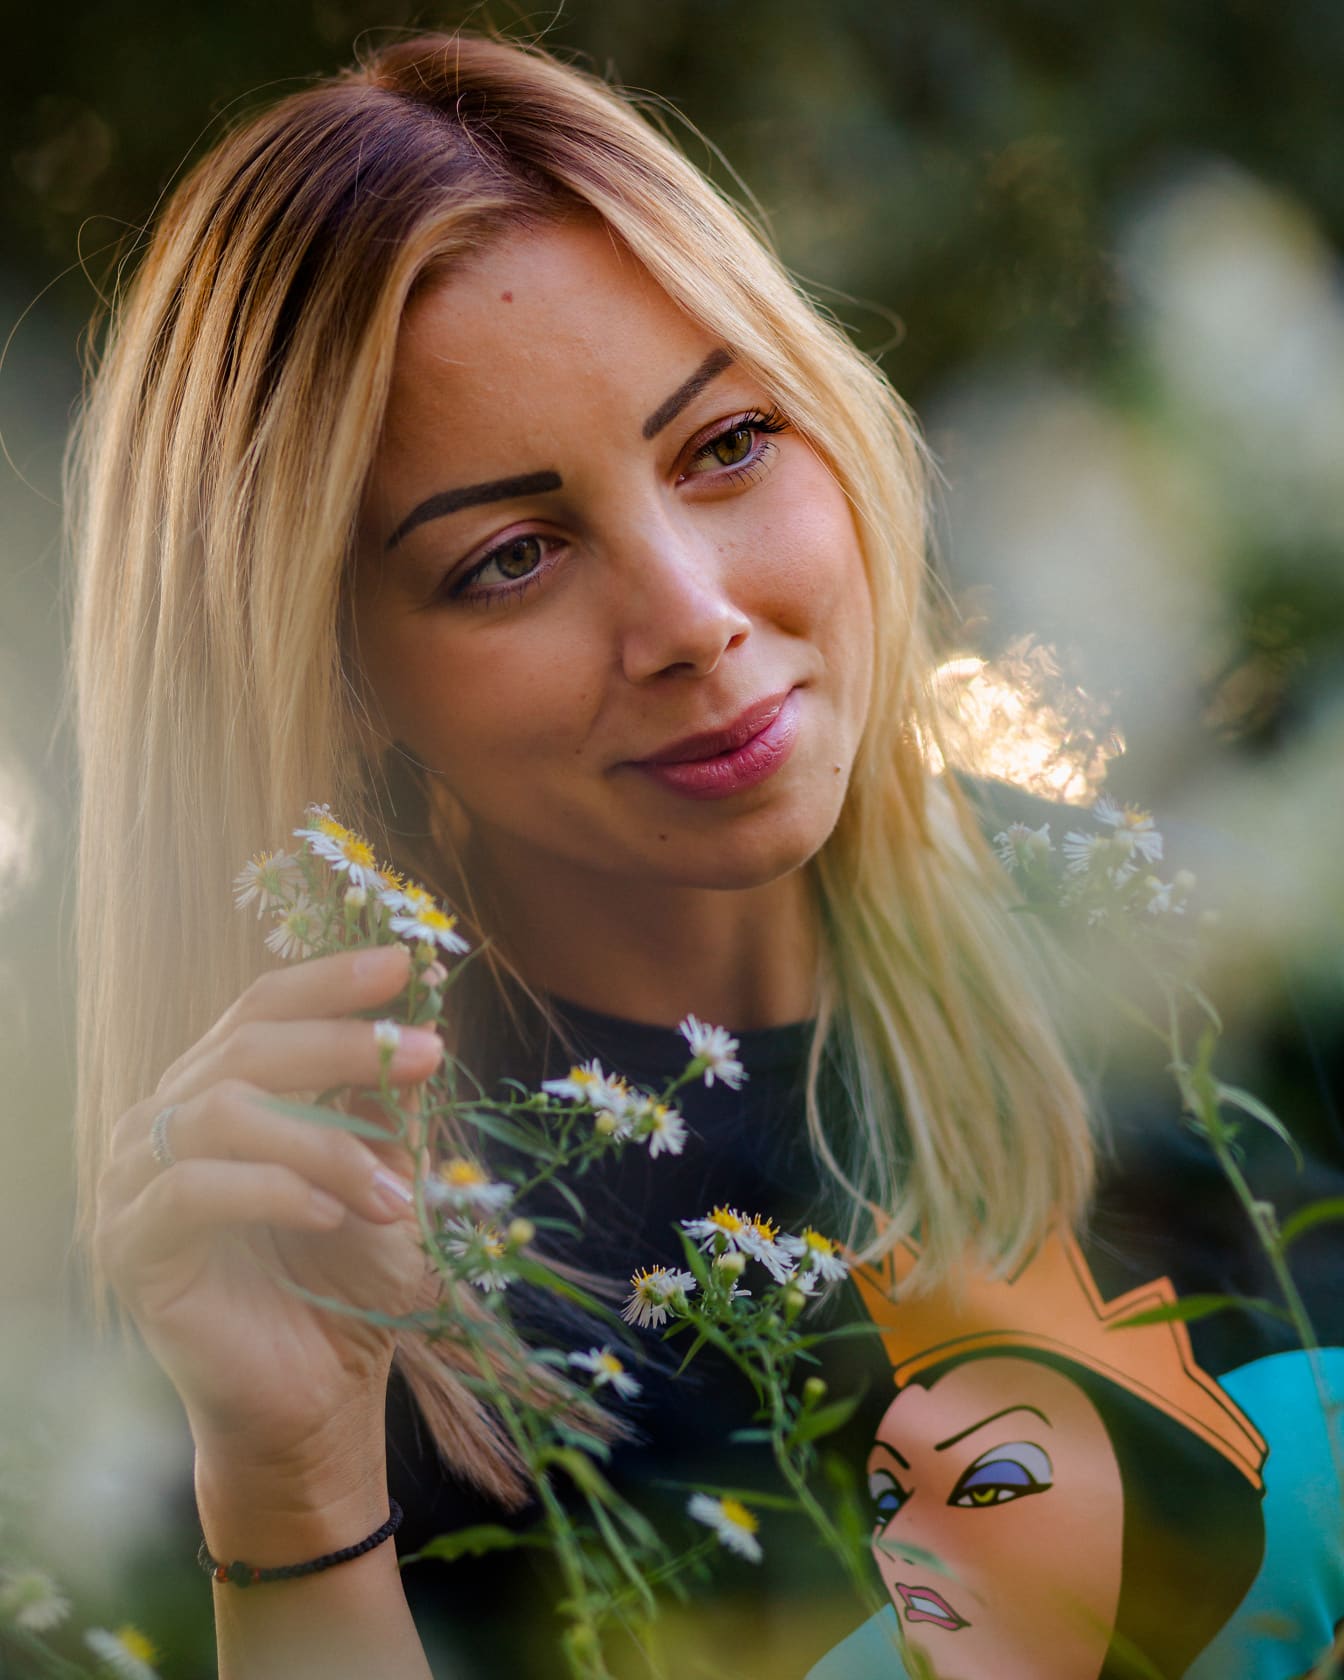 Egy gyönyörű arcú nő portréja, aki kamilla virágot tart